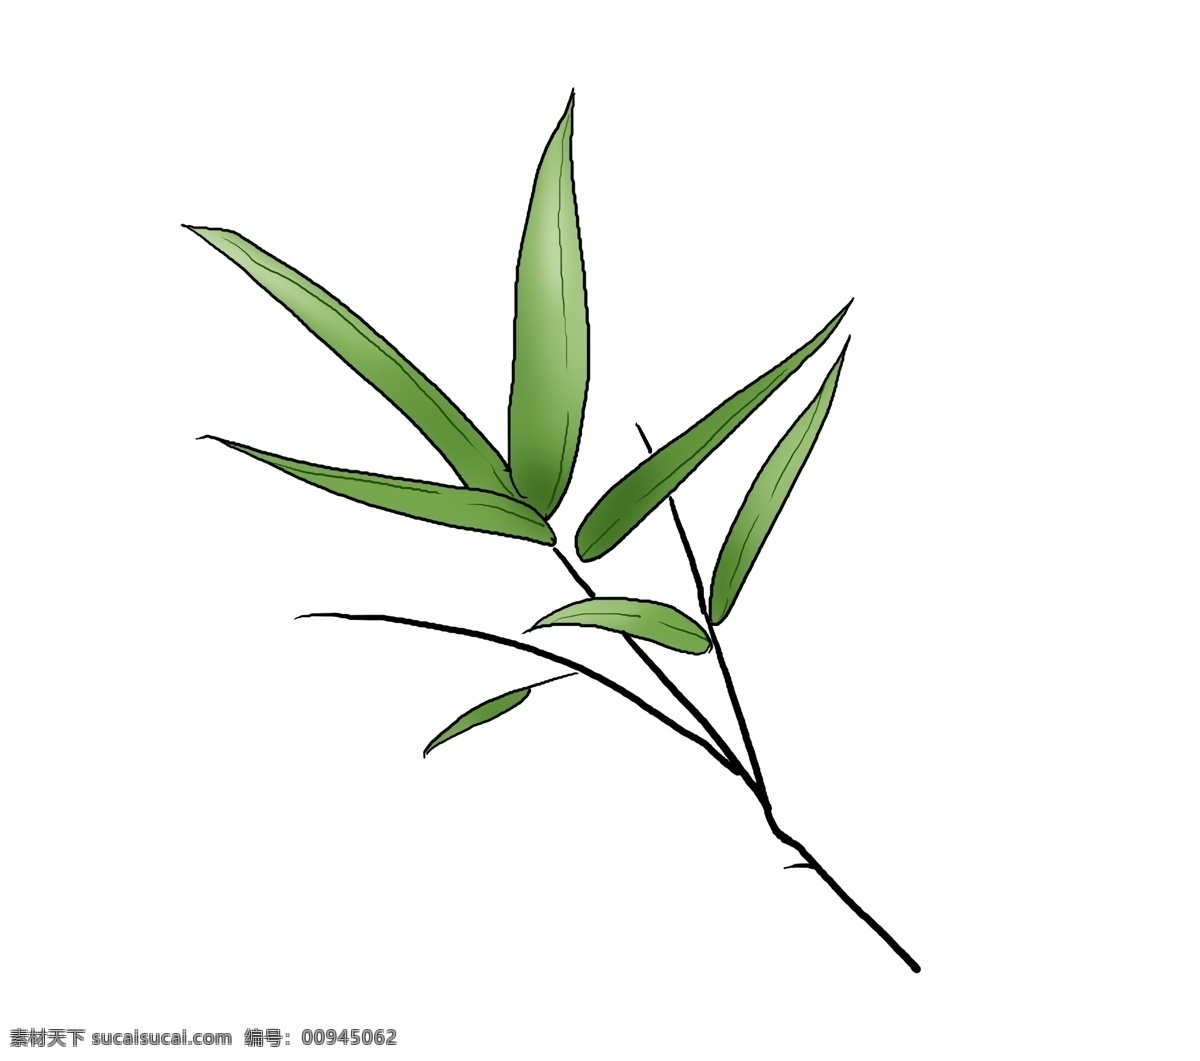 中国 水墨 手绘 竹子 叶 绿色 墨迹 古风 竹叶 江南 插画 插图 中国风 传统 植物 清新 淡彩